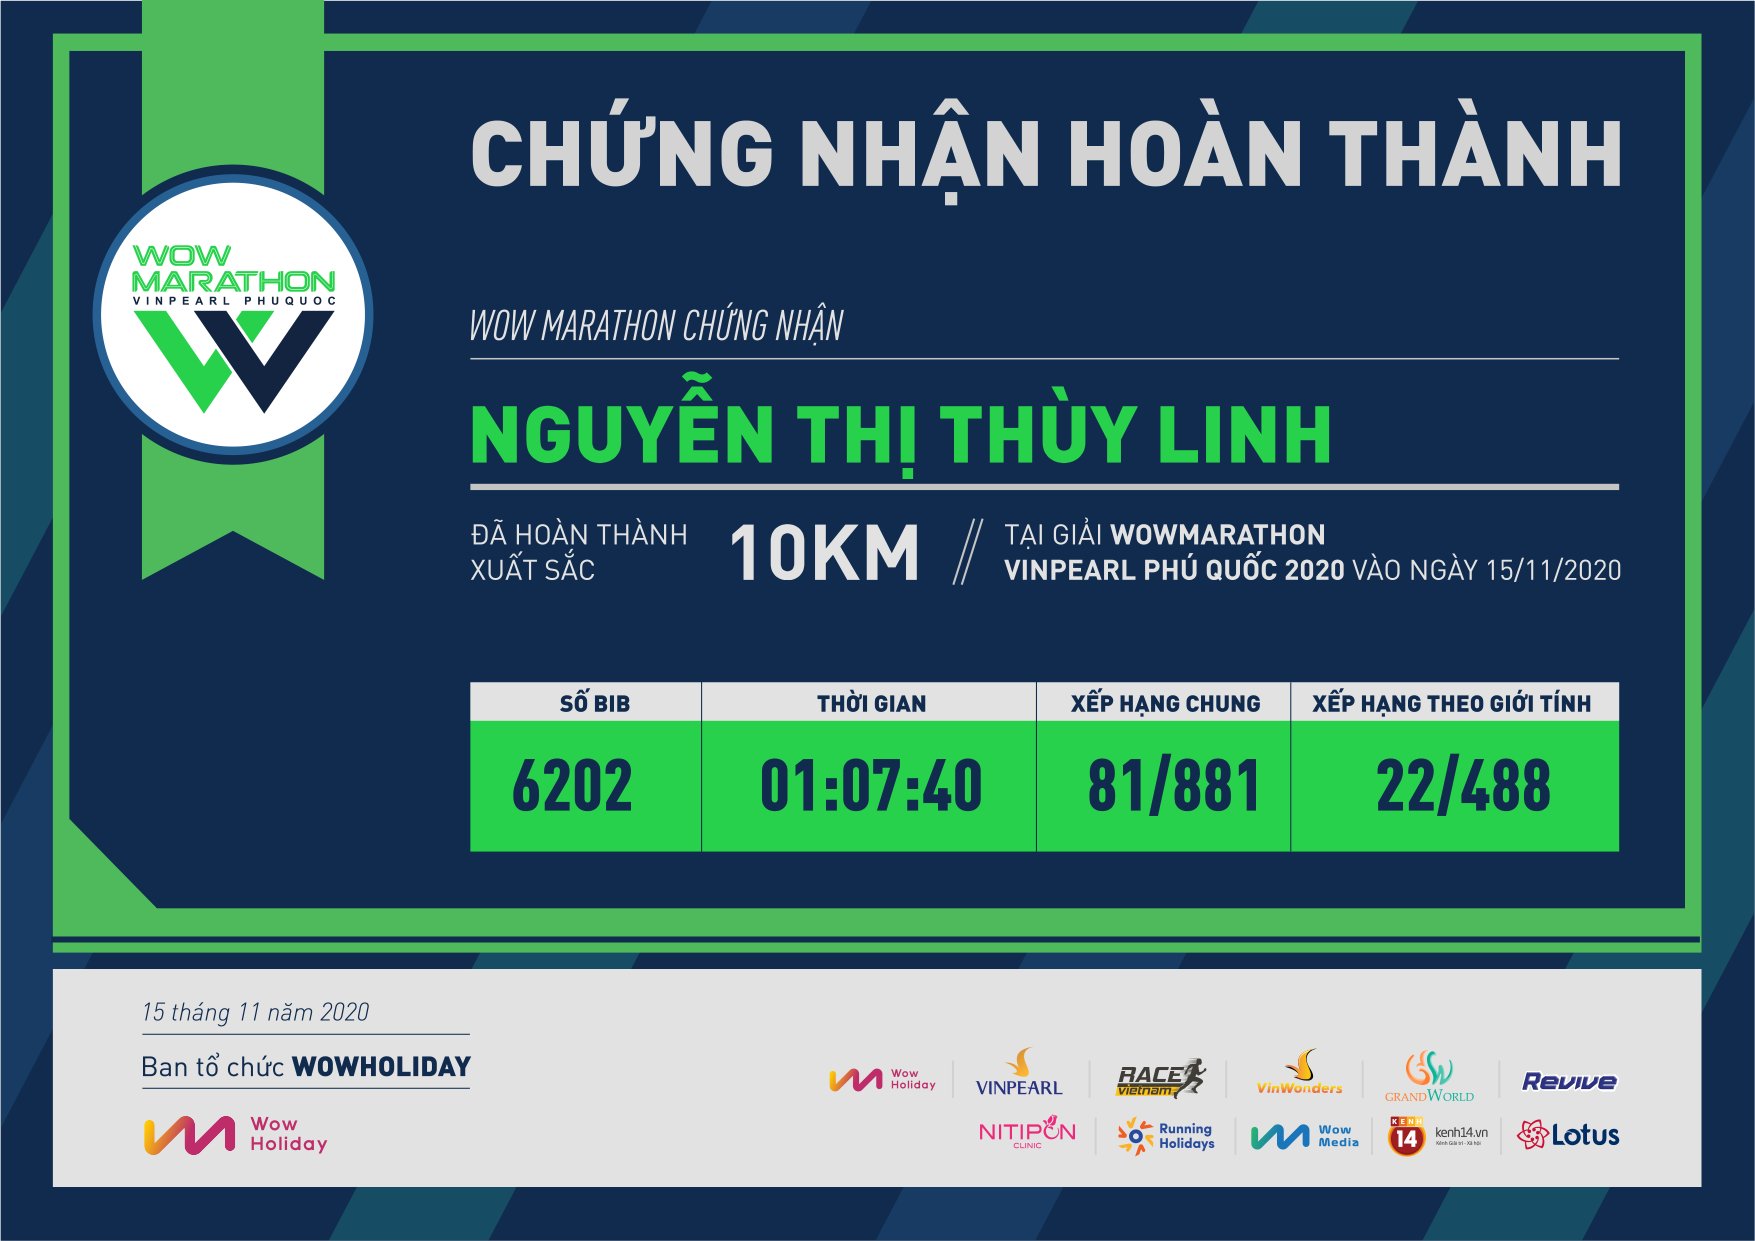 6202 - Nguyễn Thị Thùy Linh